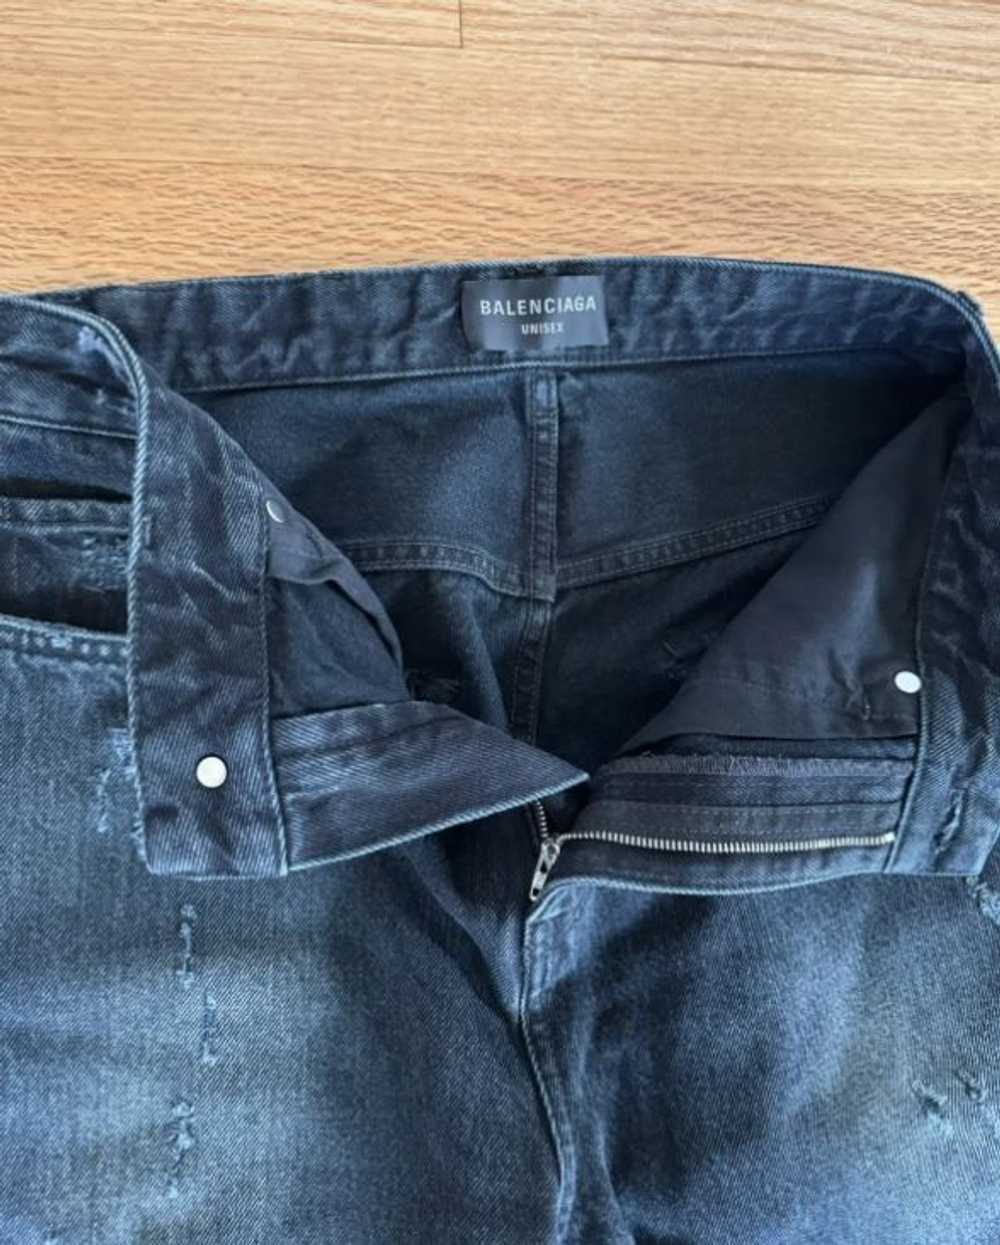 Balenciaga Balenciaga distressed baggy jeans - image 3